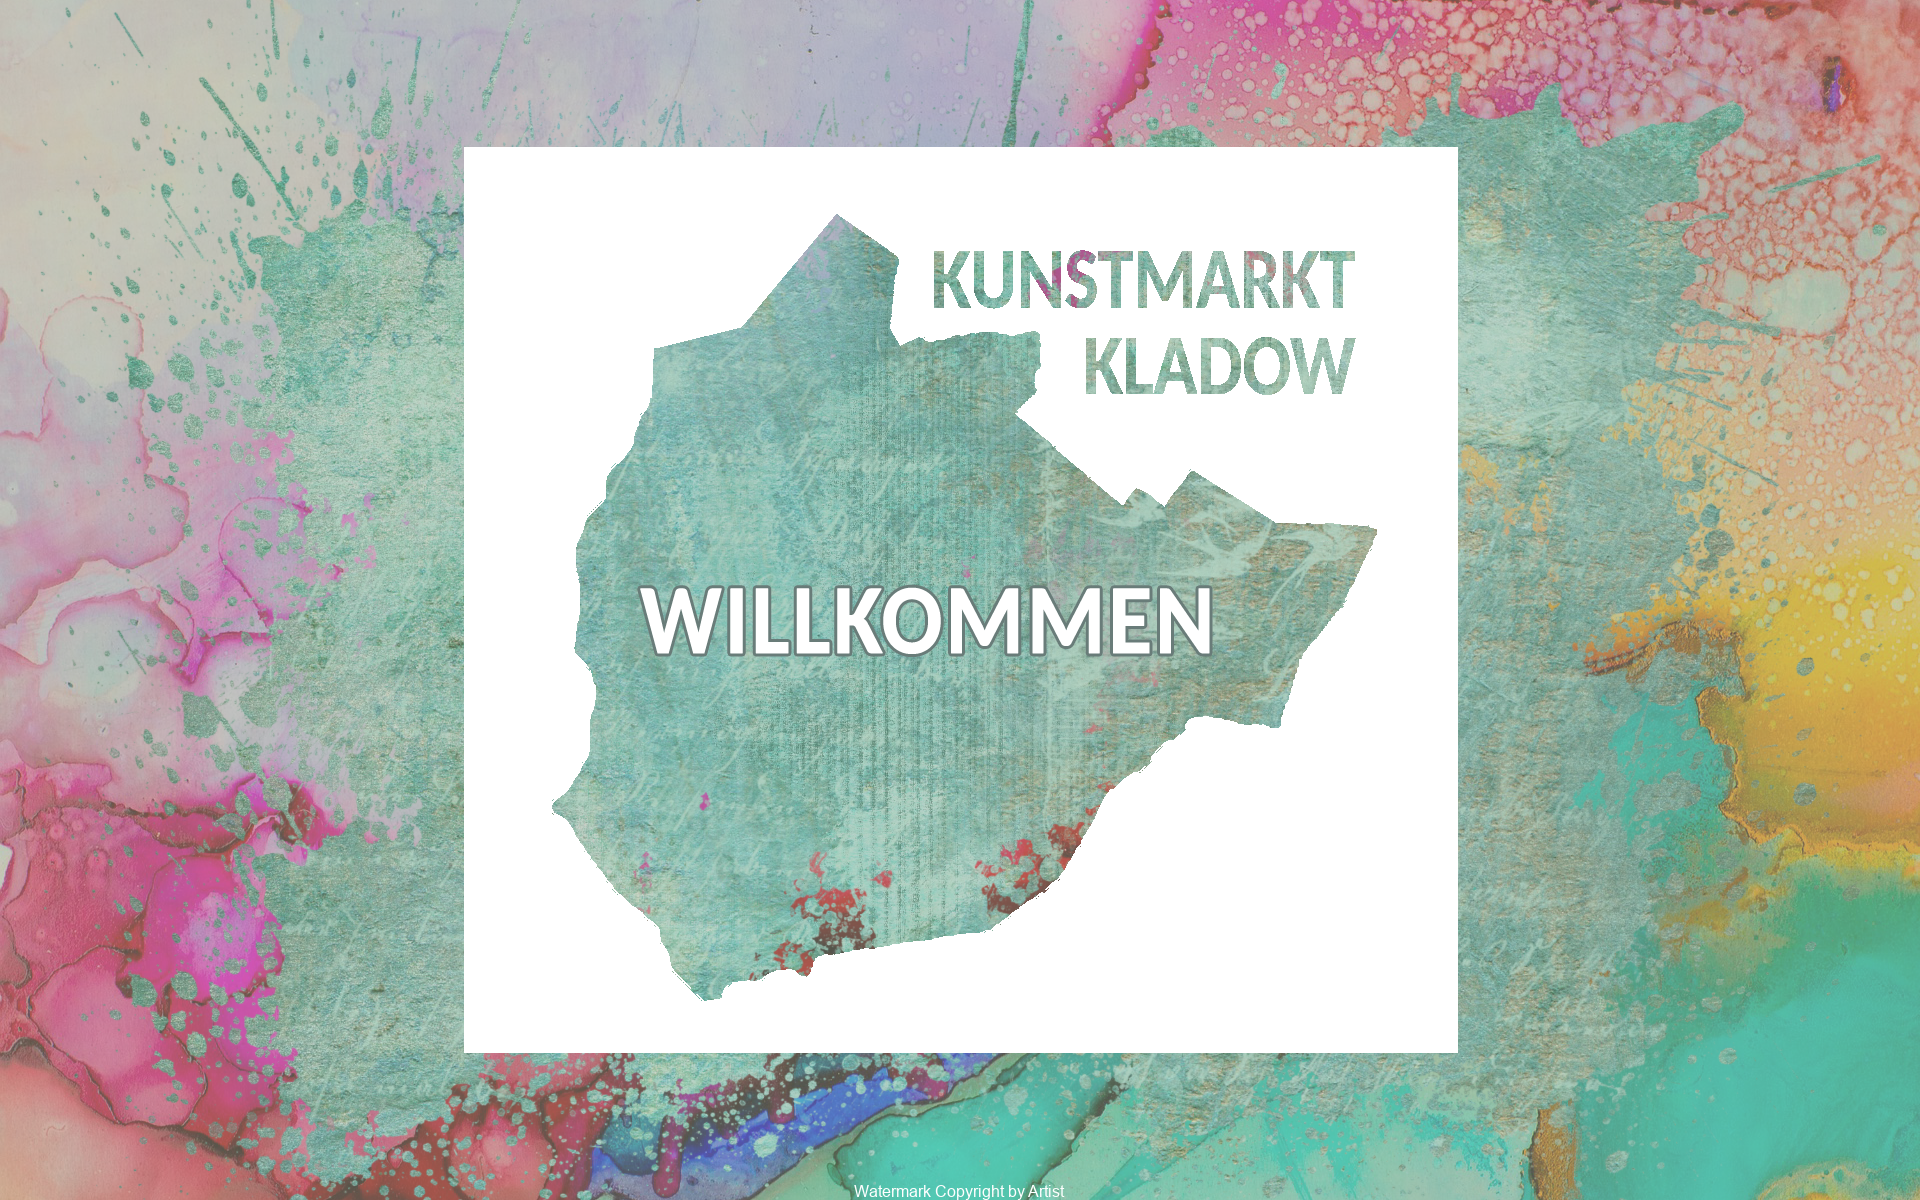 Kunstmarkt Kladow - eine kreative Region heisst sie willkommen